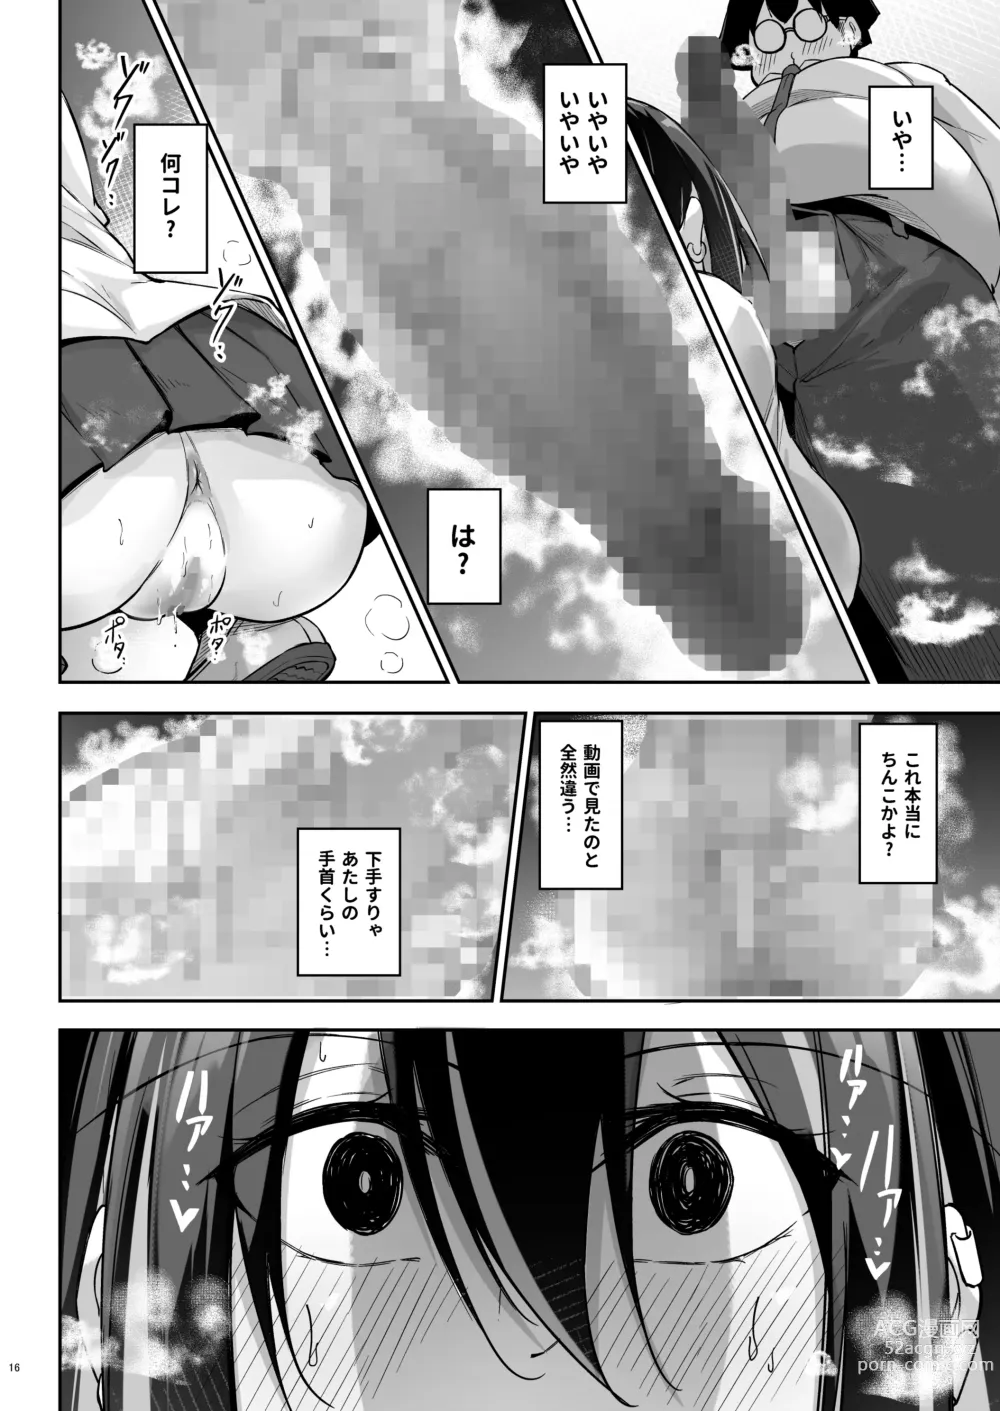 Page 15 of doujinshi Ota x Gal ~Yatsu Touko no Baai~